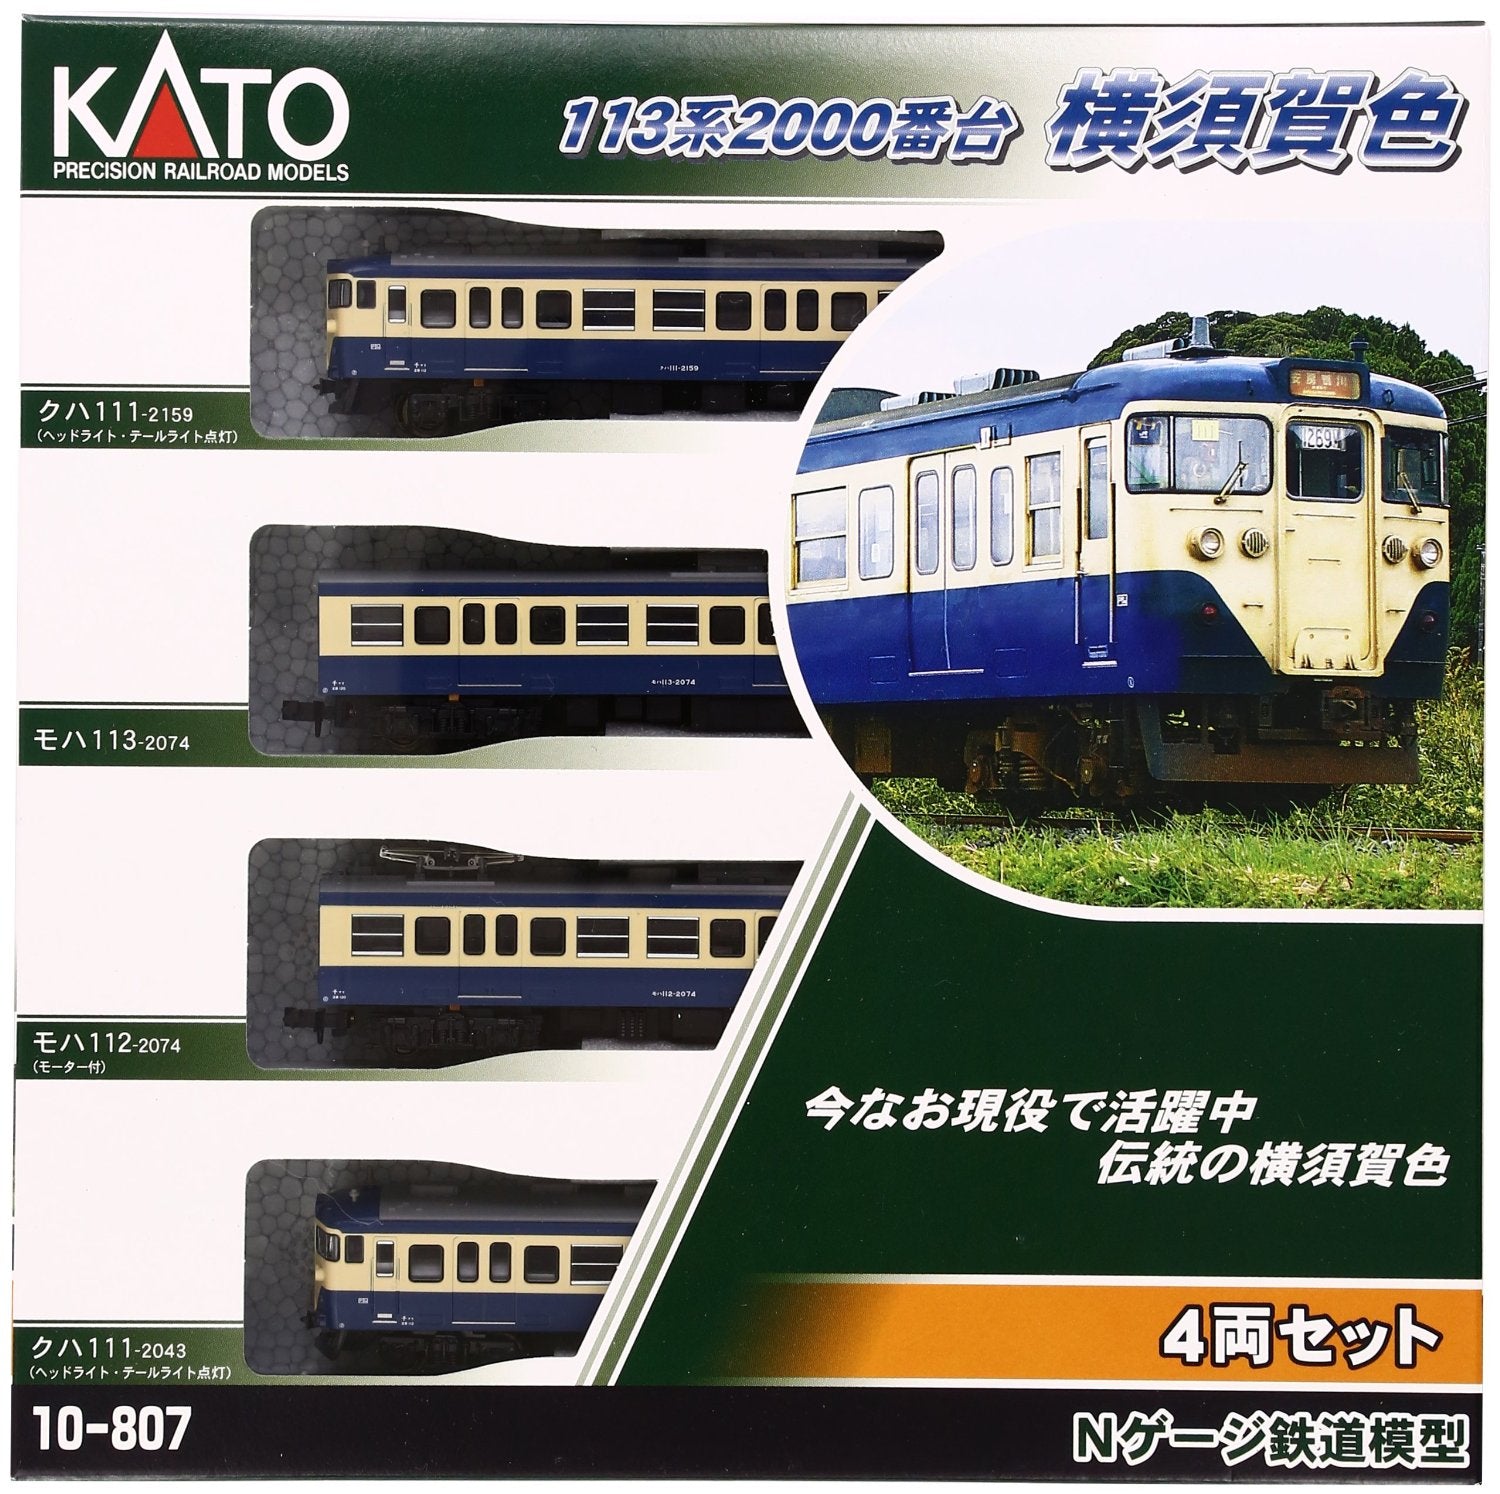 10-807 Series 113-2000 Yokosuka Color 4-Car Set